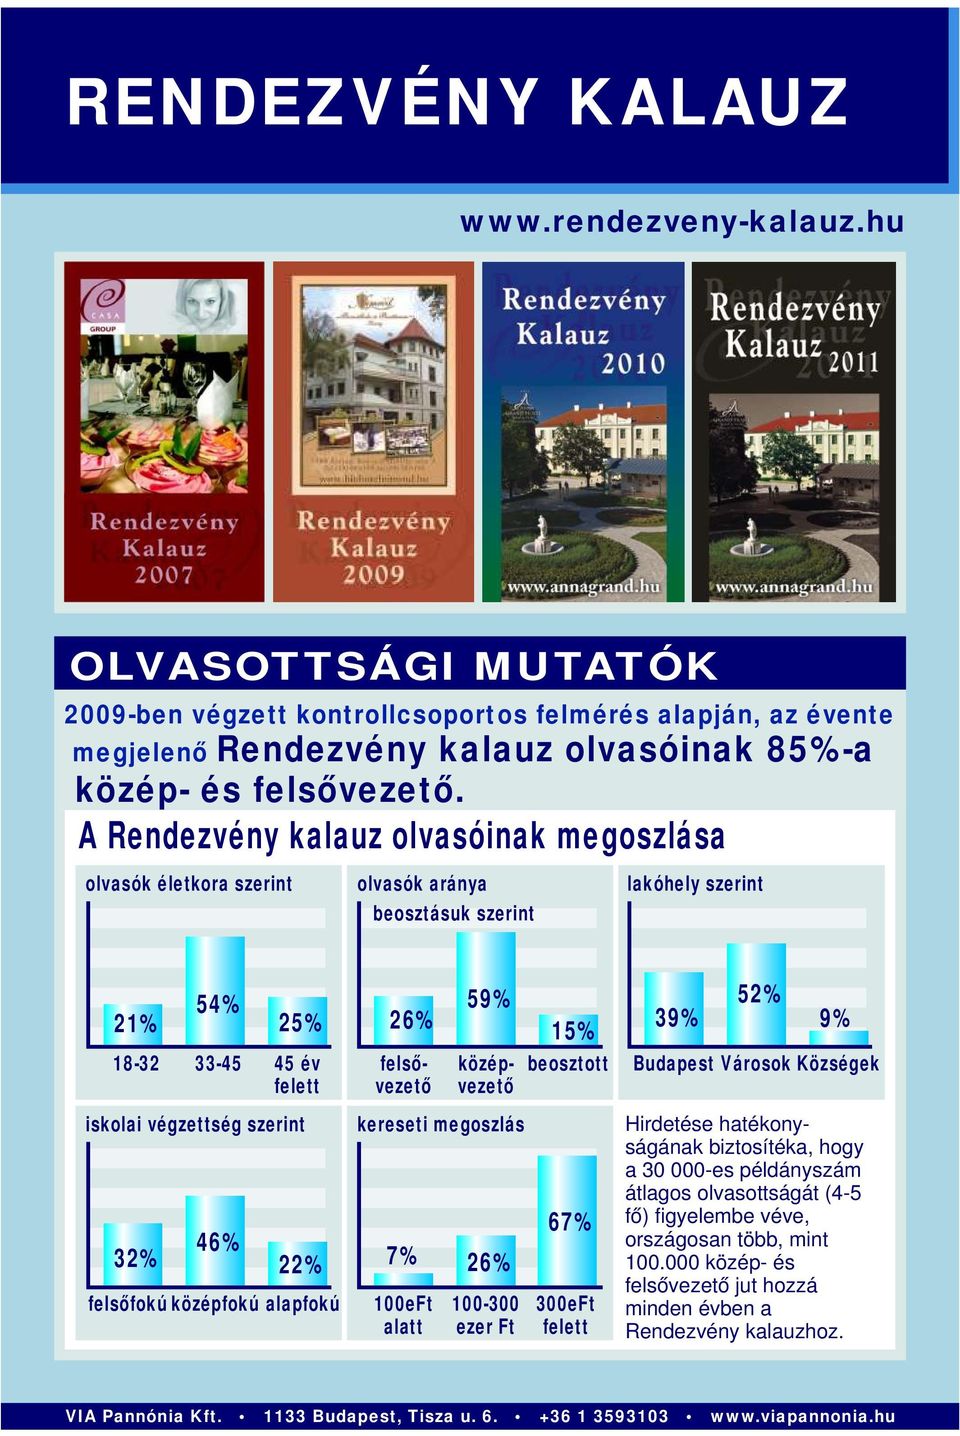 felsőfokú középfokú alapfokú 26% 59% 15% középvezető felsővezető kereseti megoszlás 7% 26% 100eFt alatt 100-300 ezer Ft beosztott 67% 300eFt felett 39% 52% 9% Budapest Városok Községek Hirdetése